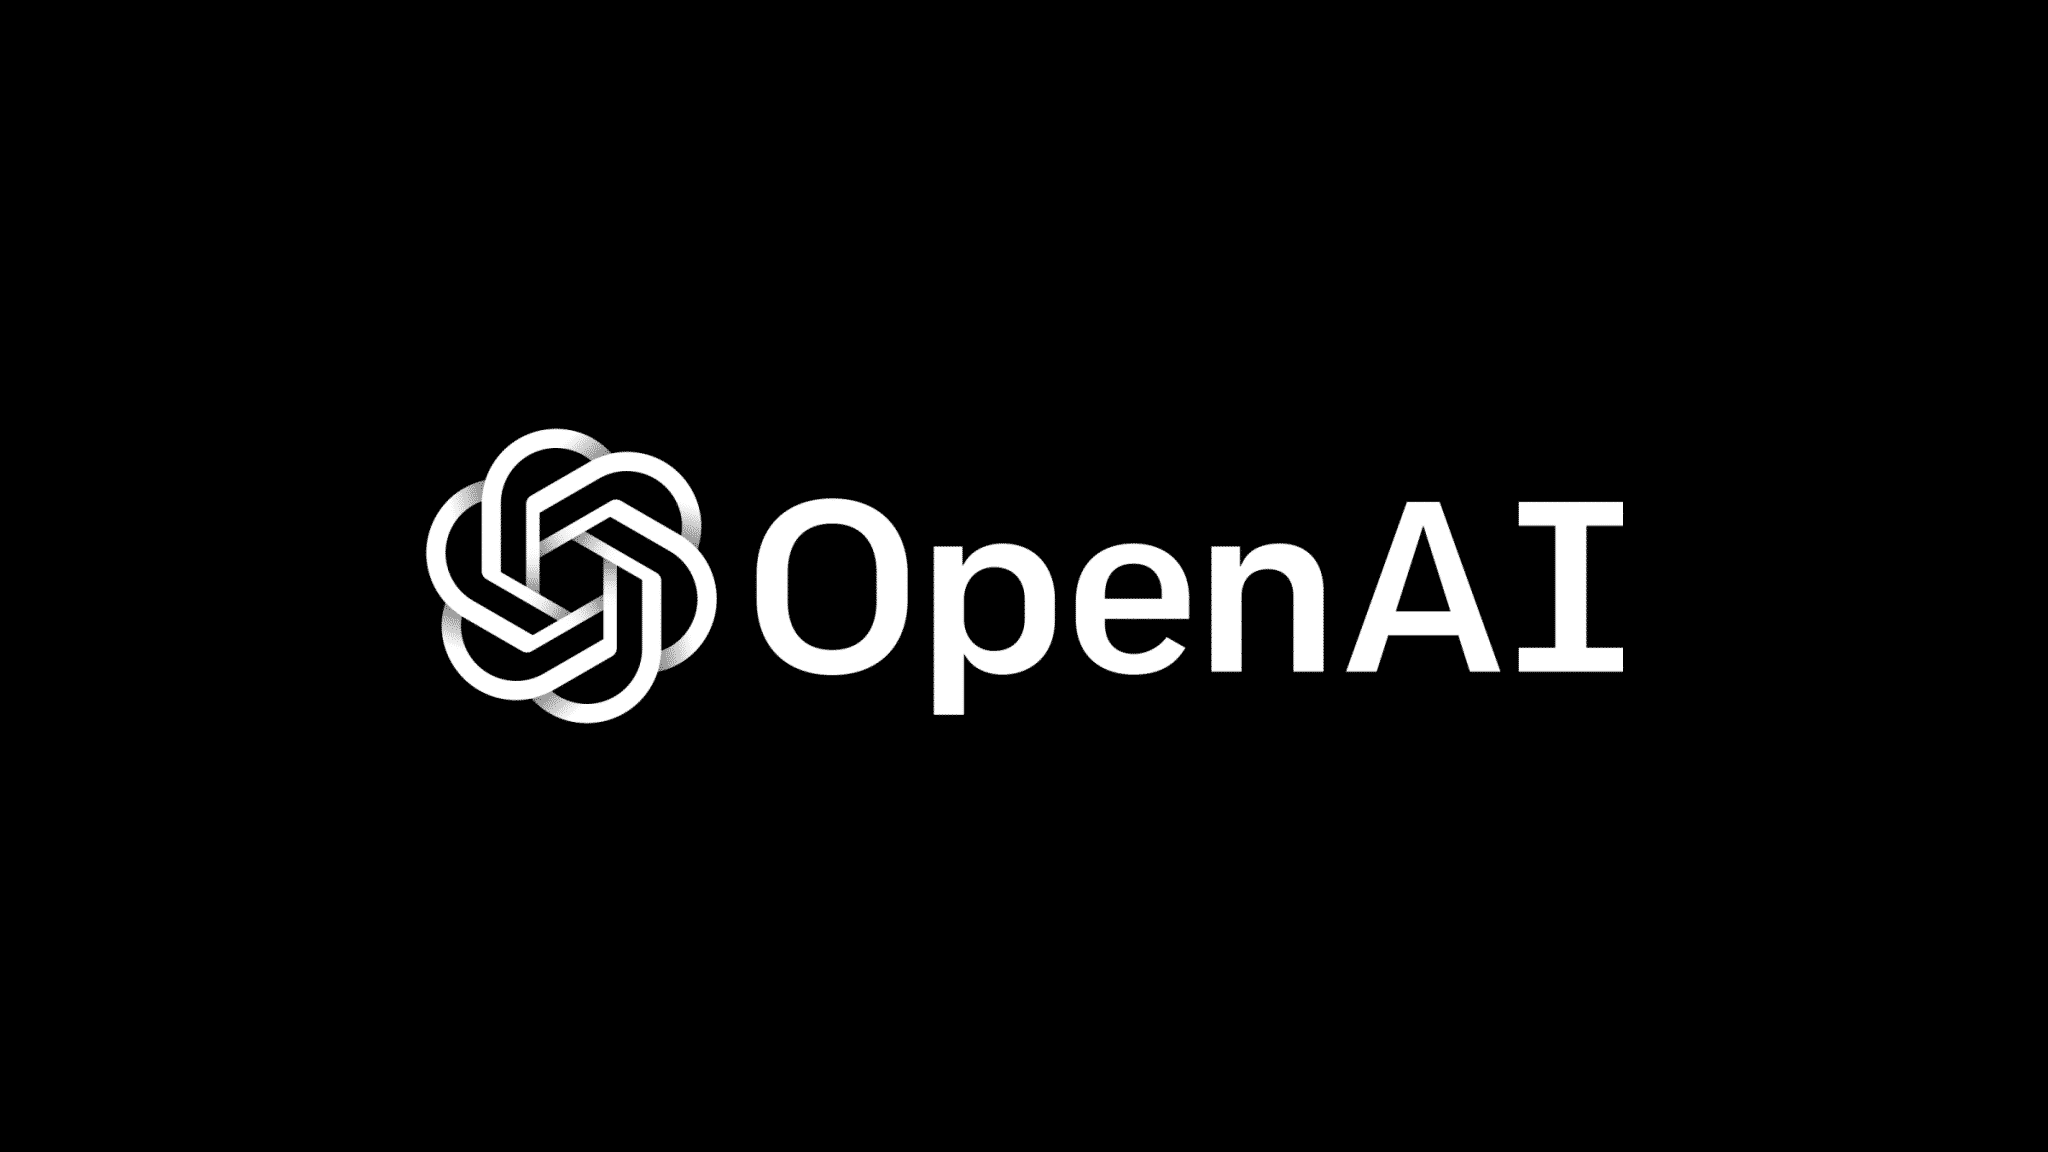 Découvrez SearchGPT, le nouveau moteur de recherche d'OpenAI, qui promet de révolutionner la recherche en ligne et de concurrencer Google.